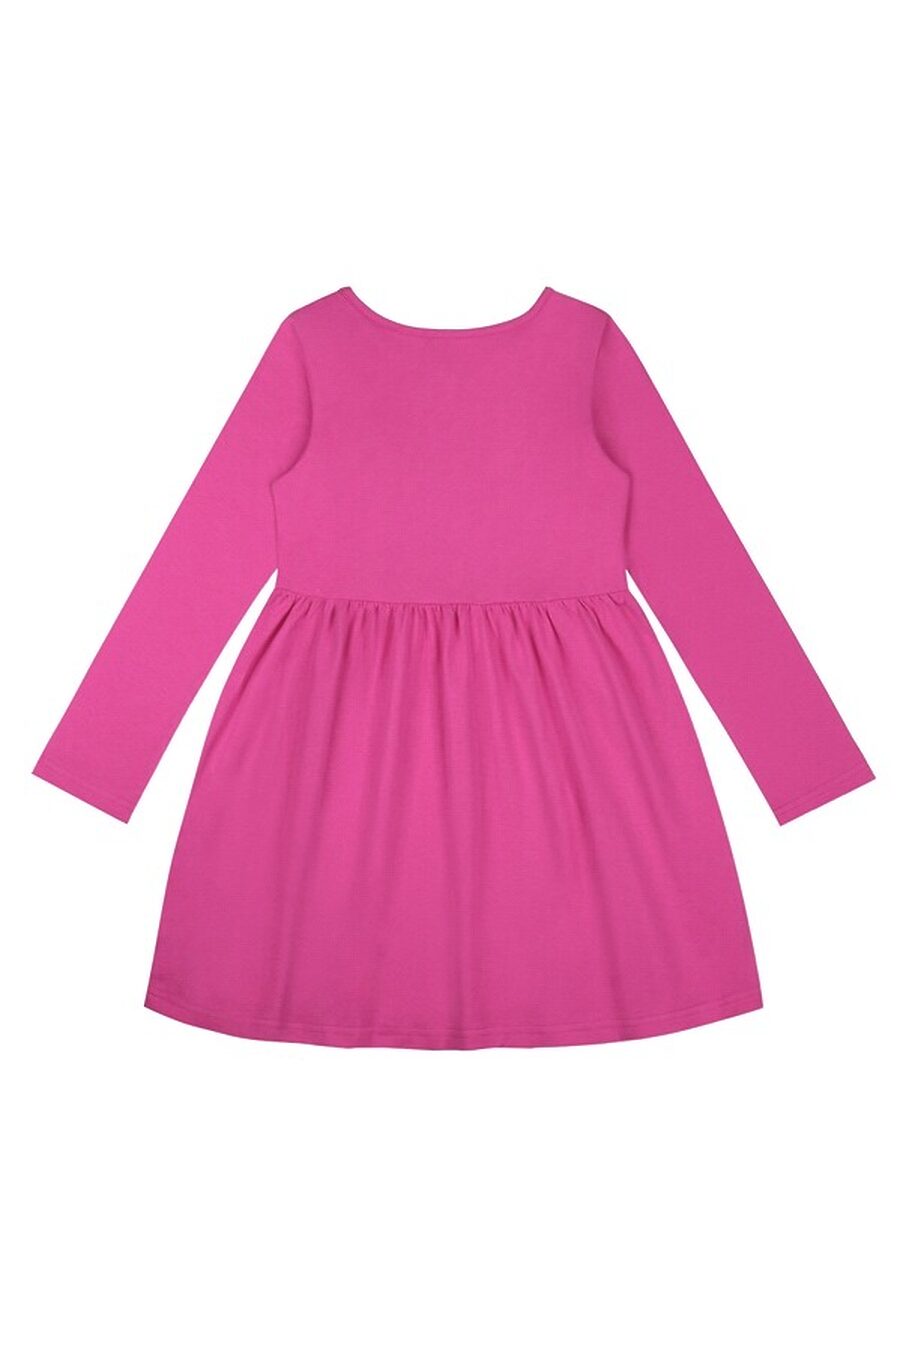 Платье для девочек АПРЕЛЬ 807640 купить оптом от производителя. Совместная покупка детской одежды в OptMoyo